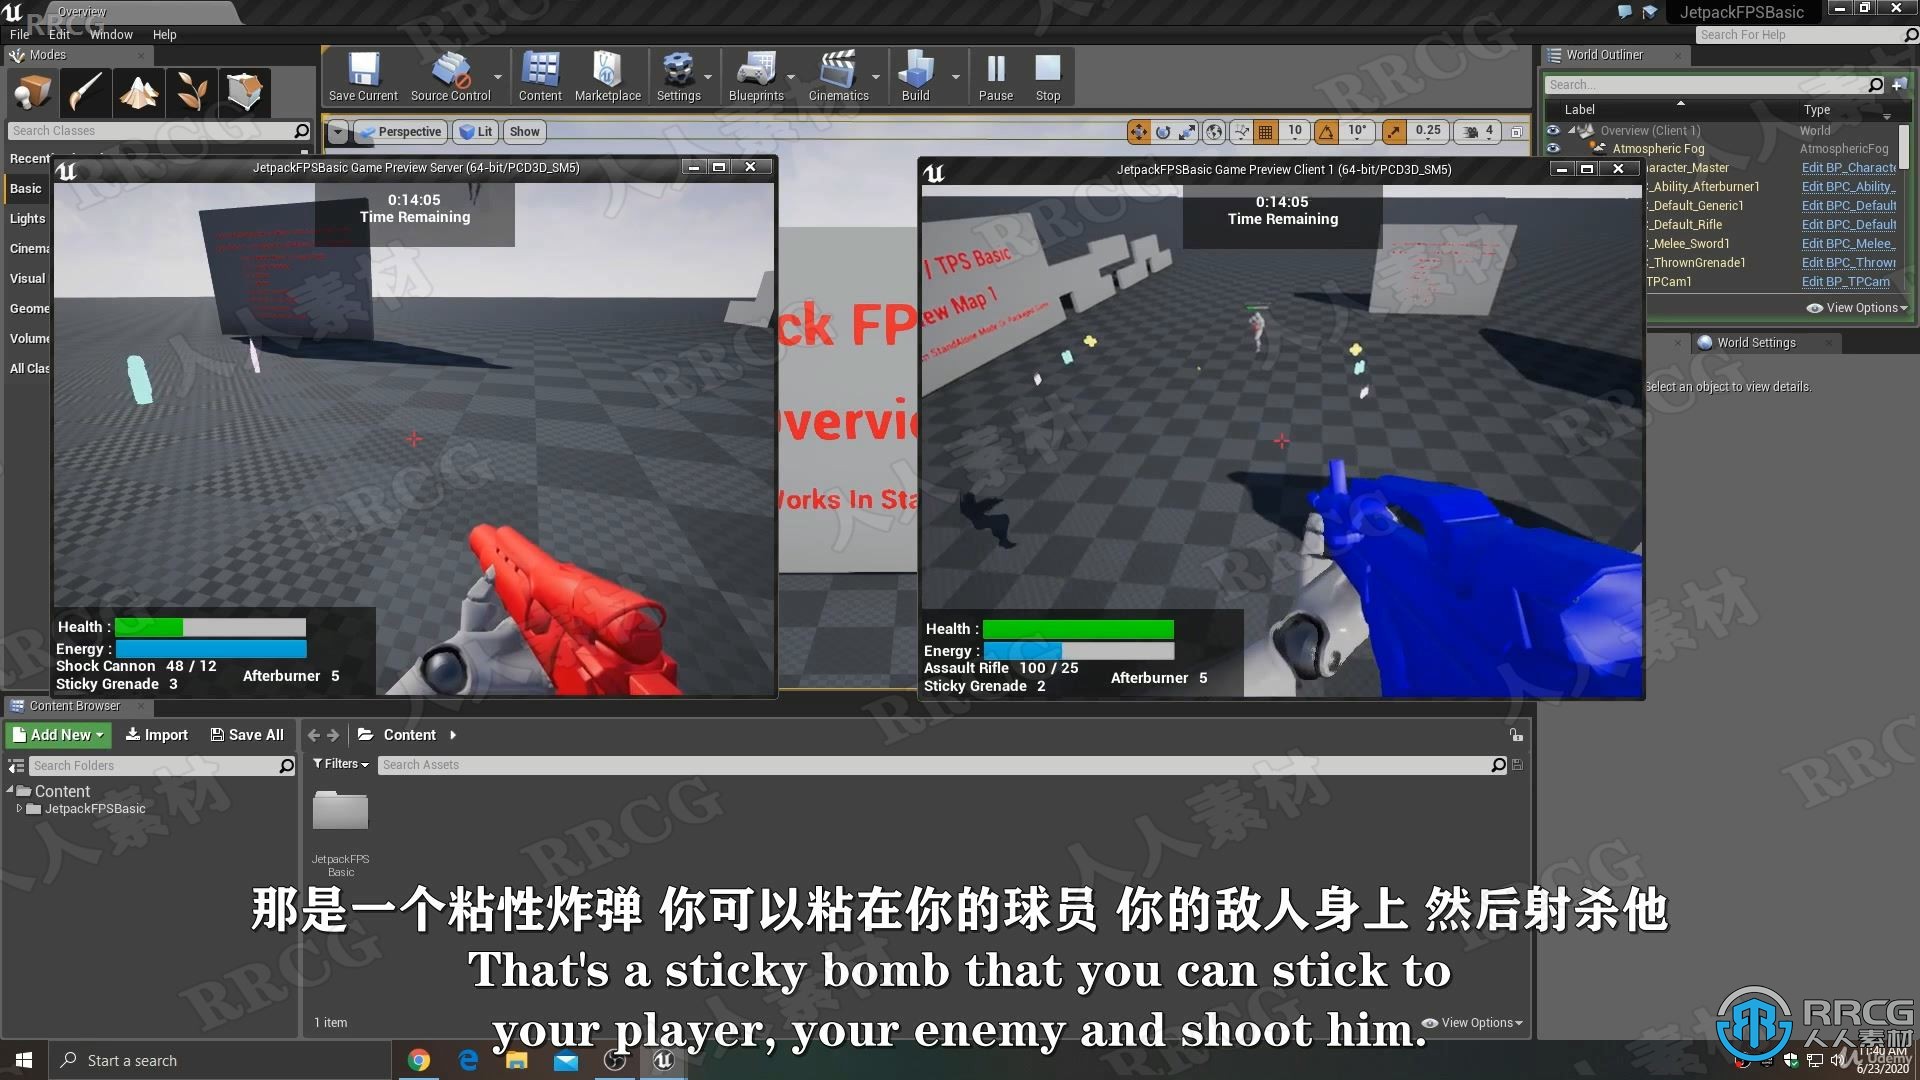 【中文字幕】Unreal Engine使用蓝图制作多人联机FPS射击游戏视频教程